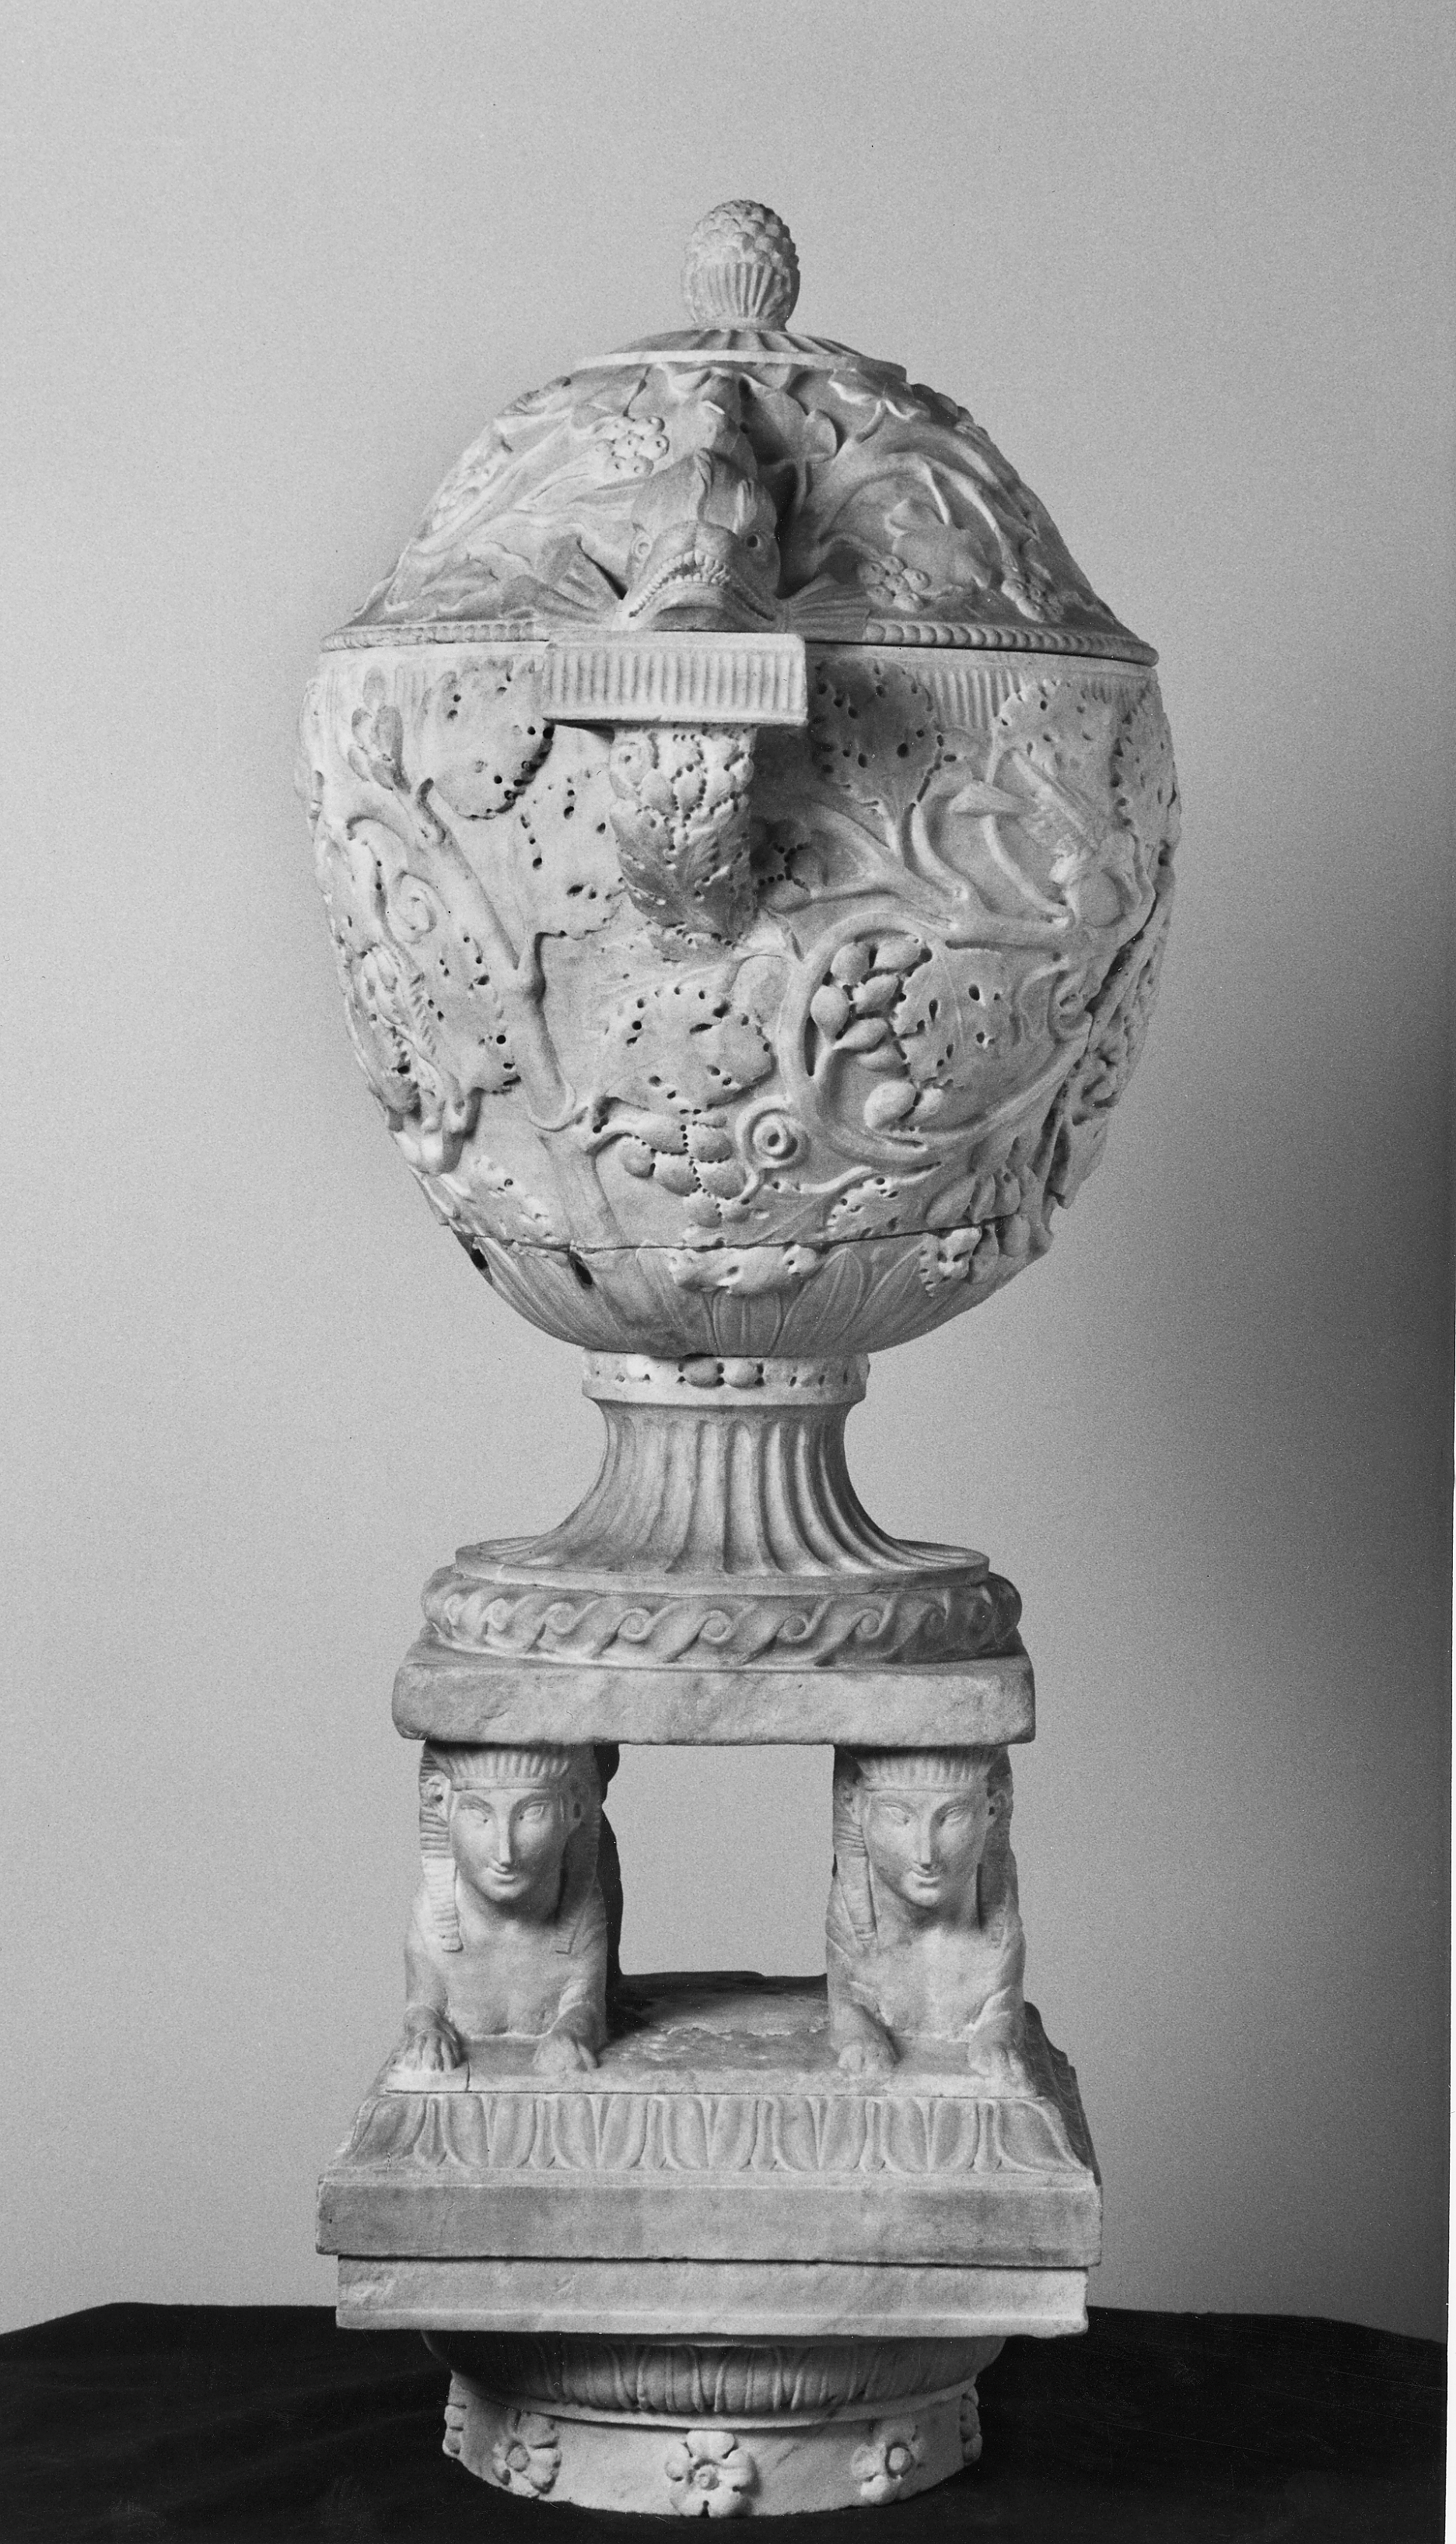 Schwarz-weiß Fotografie einer Vase (oder Aschenurne) aus Marmor im Profil. Die Mischwesen des Sockels sind frontal zu sehen.